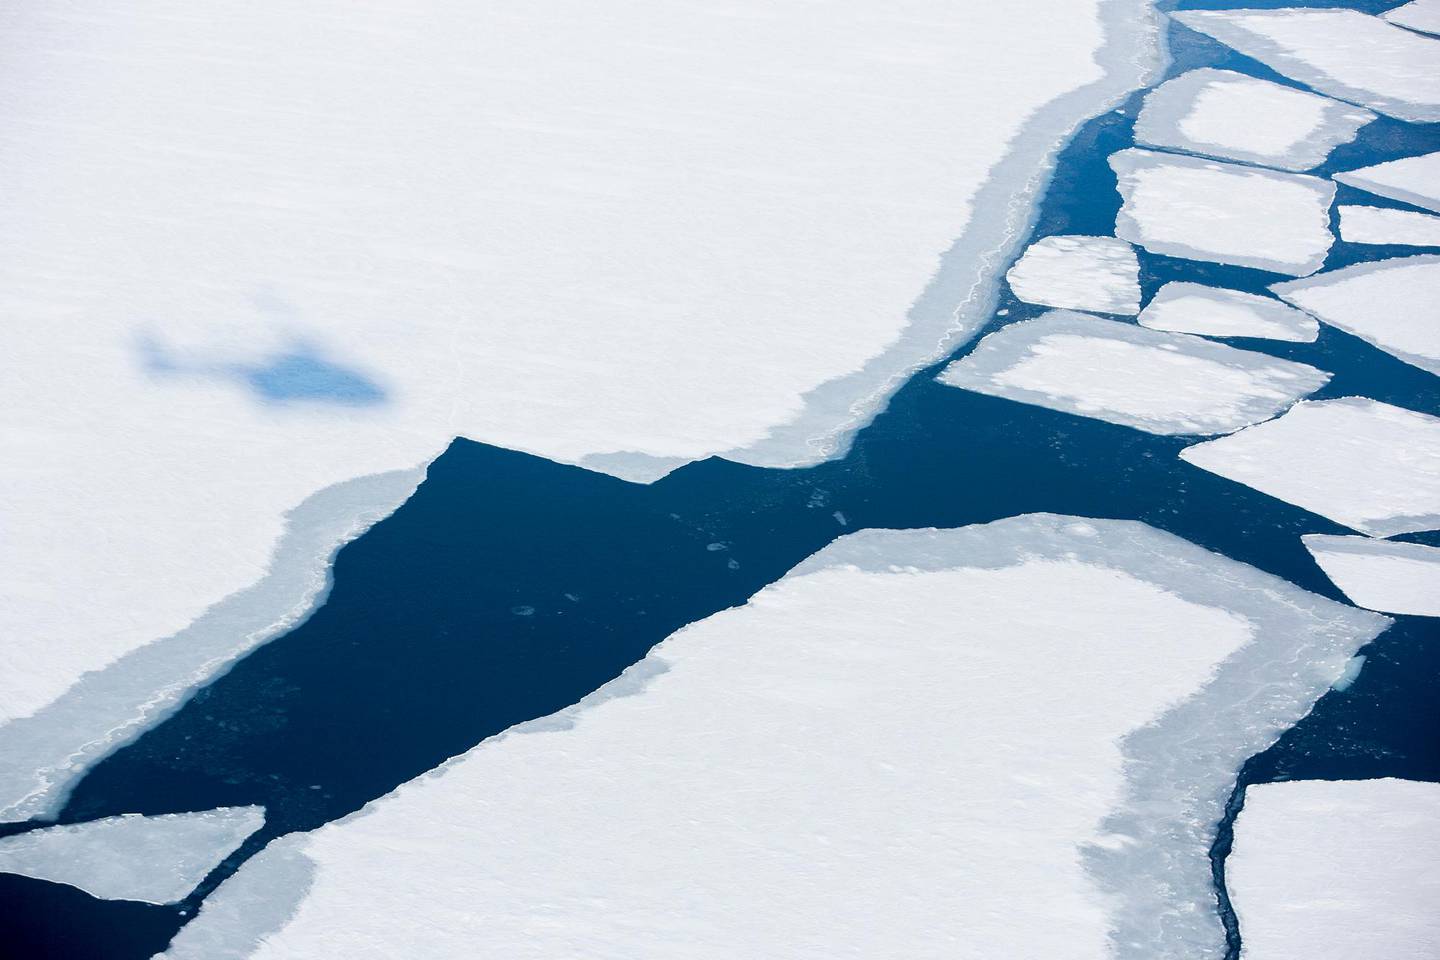 Nesten Nordpolen  20150421.
Is på en av fjordene på Svalbard. Svalbard og Arktis er det område i verden hvor klimaendringene merkes mest og først. De siste årene har det blitt stadig mindre is i fjordene noe som har tvunget isbjørnen på land etter jakt på mat.
Foto: Tore Meek / NTB scanpix